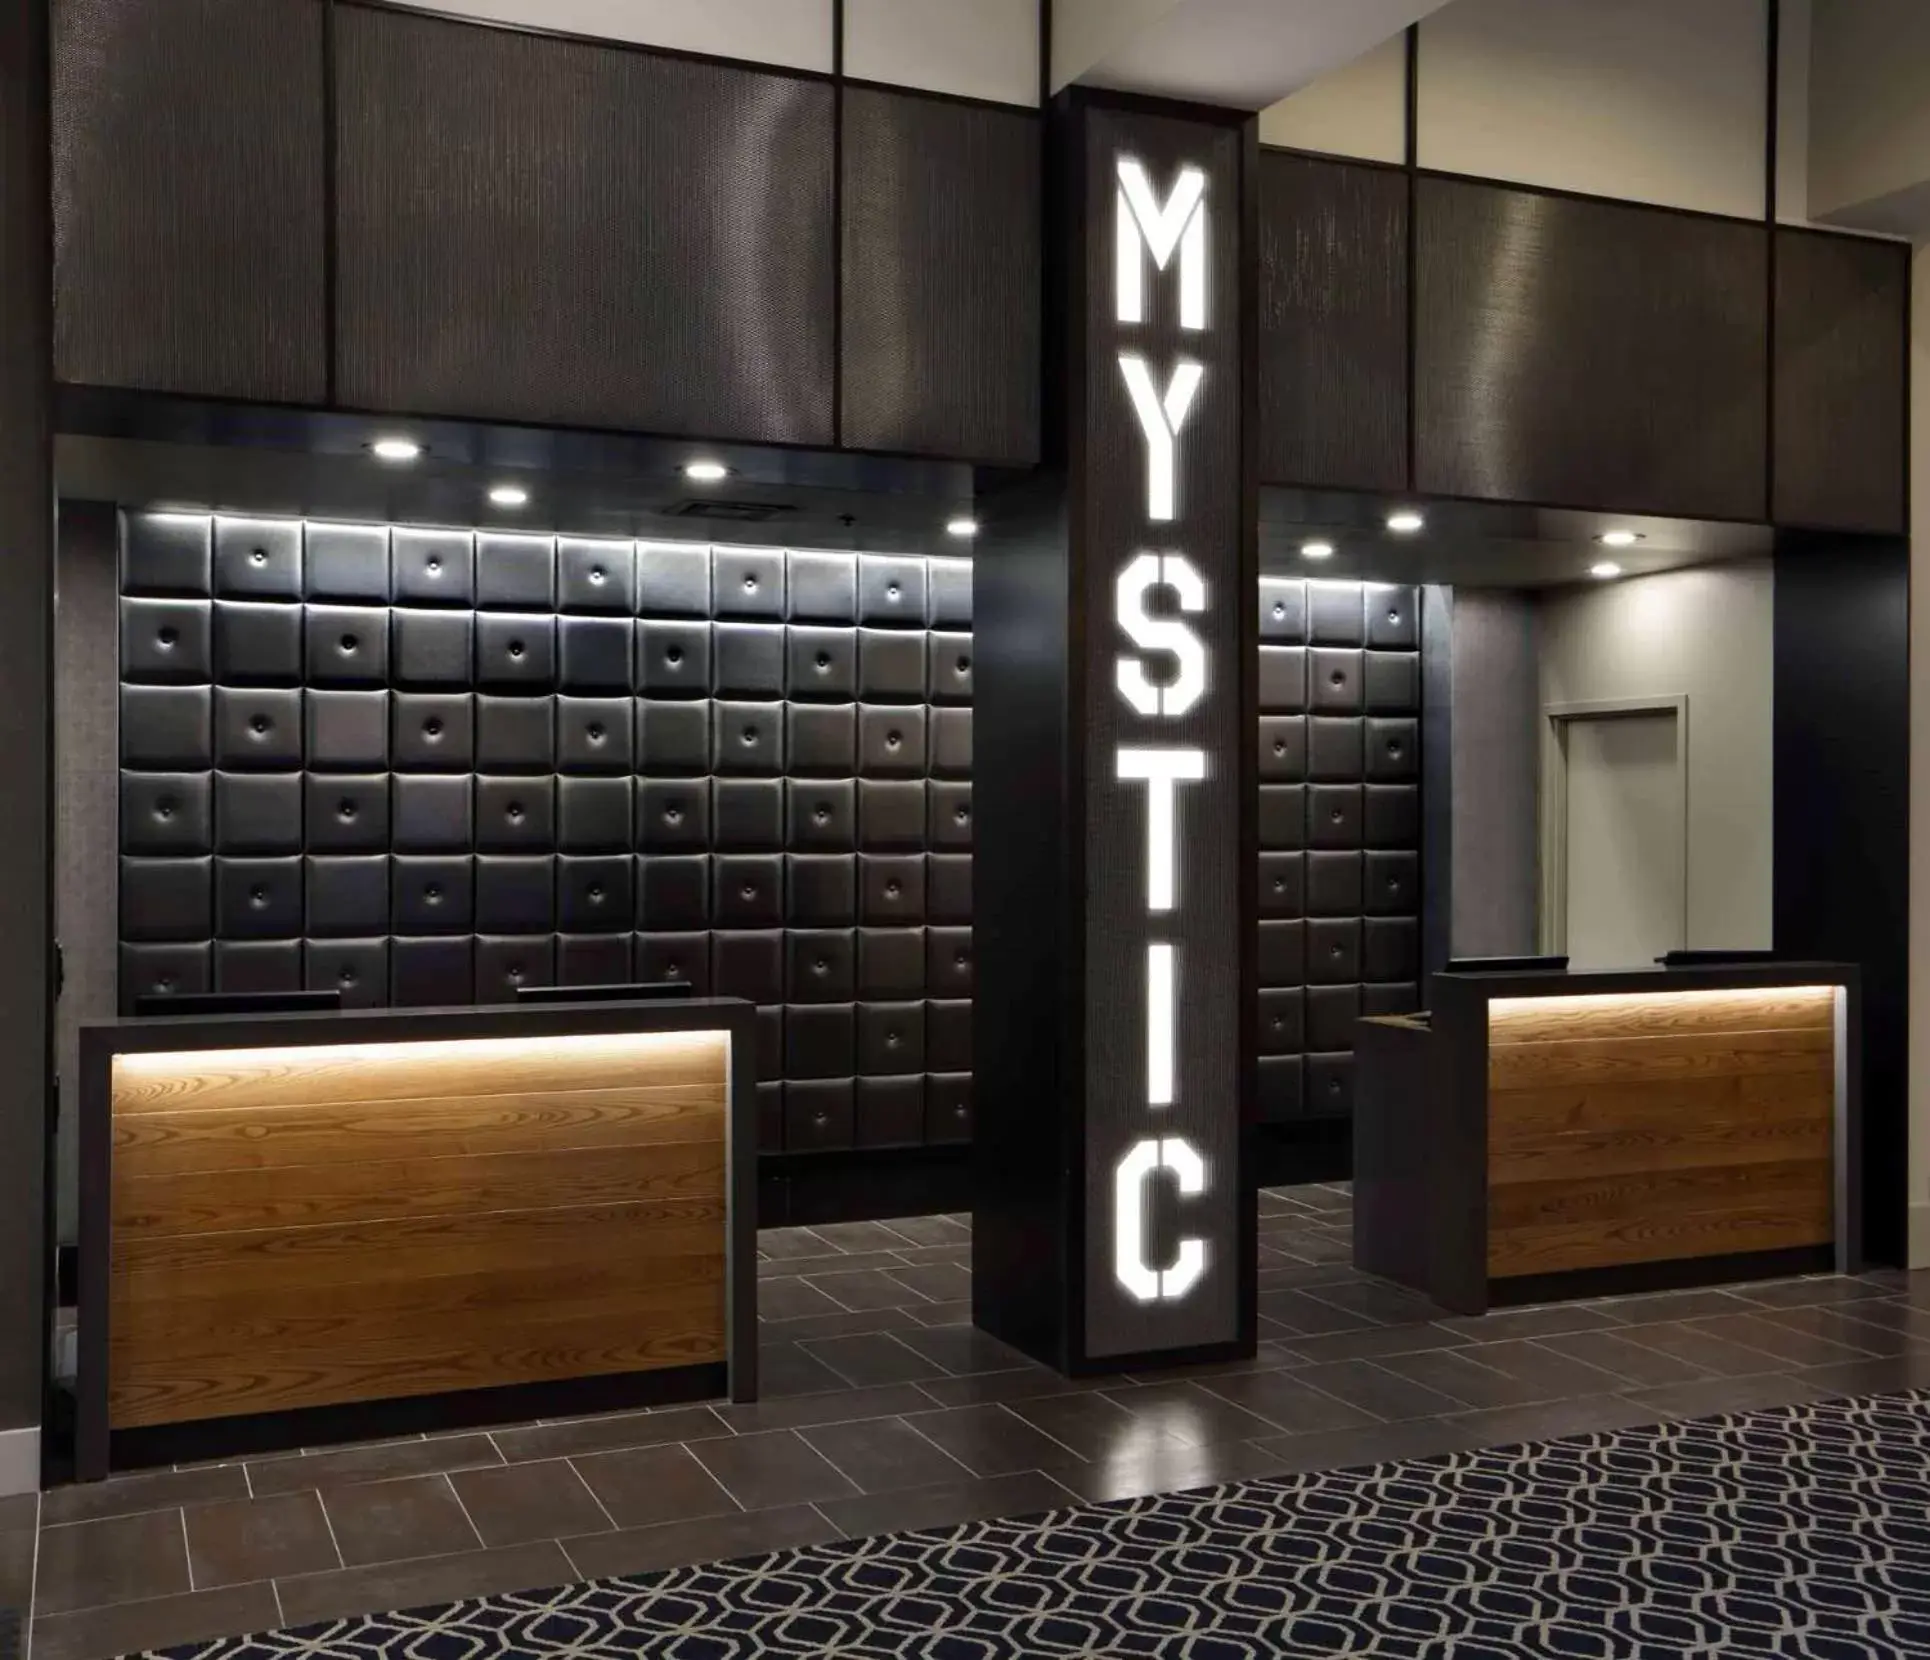 Lobby or reception in Hilton Mystic